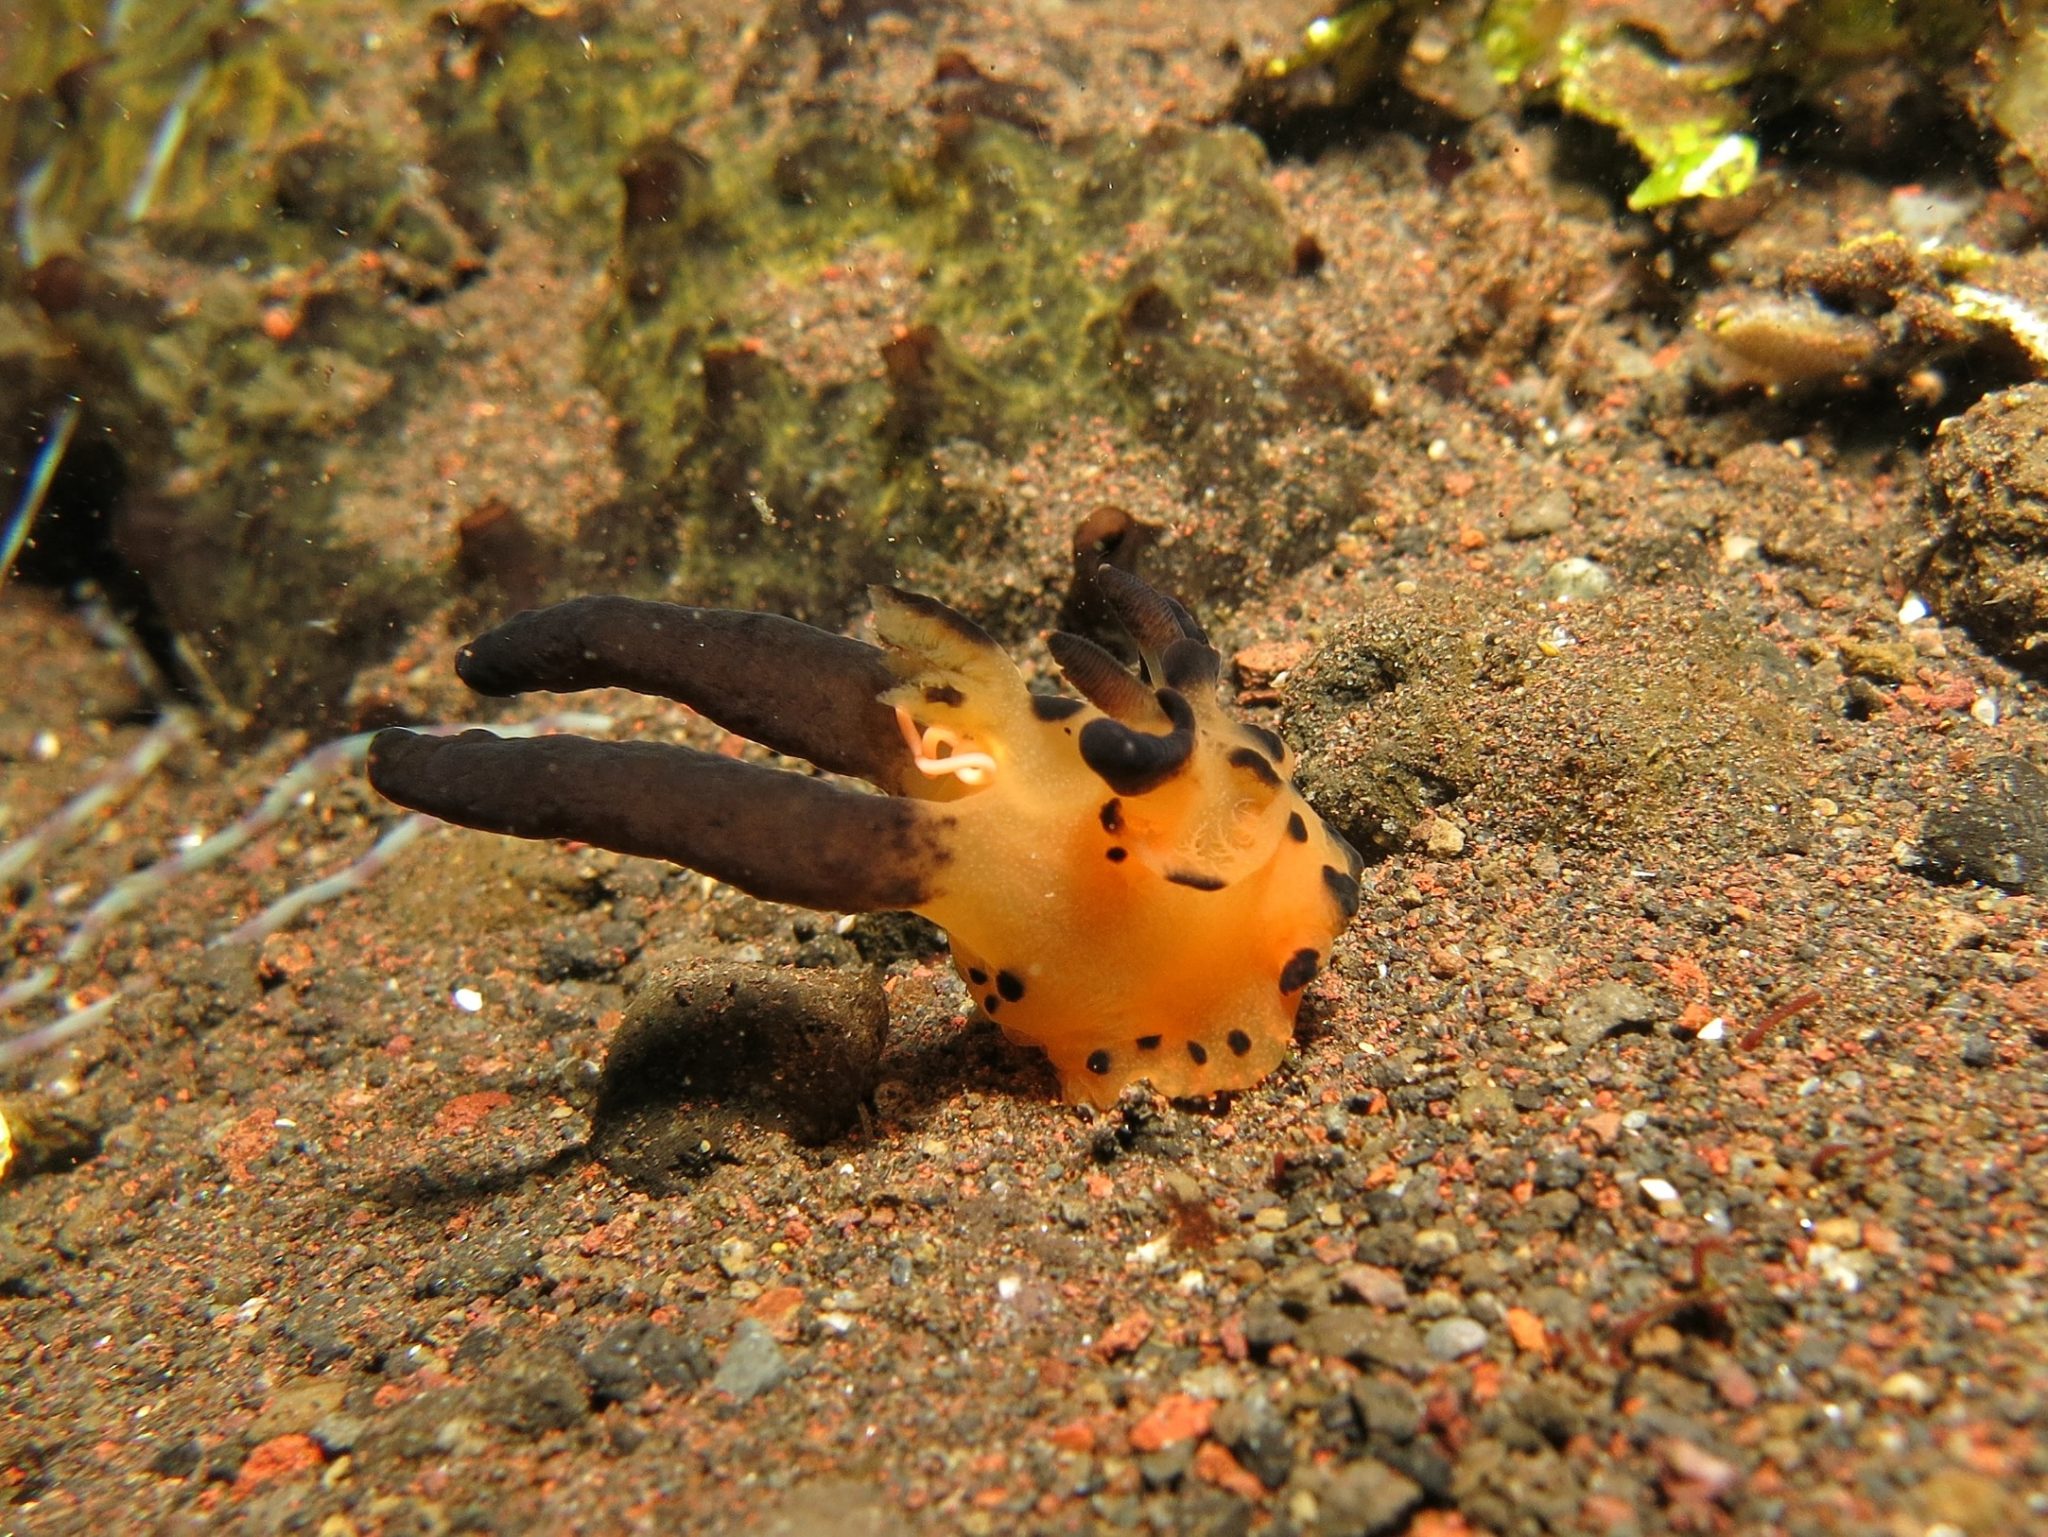 An orange nudibranch